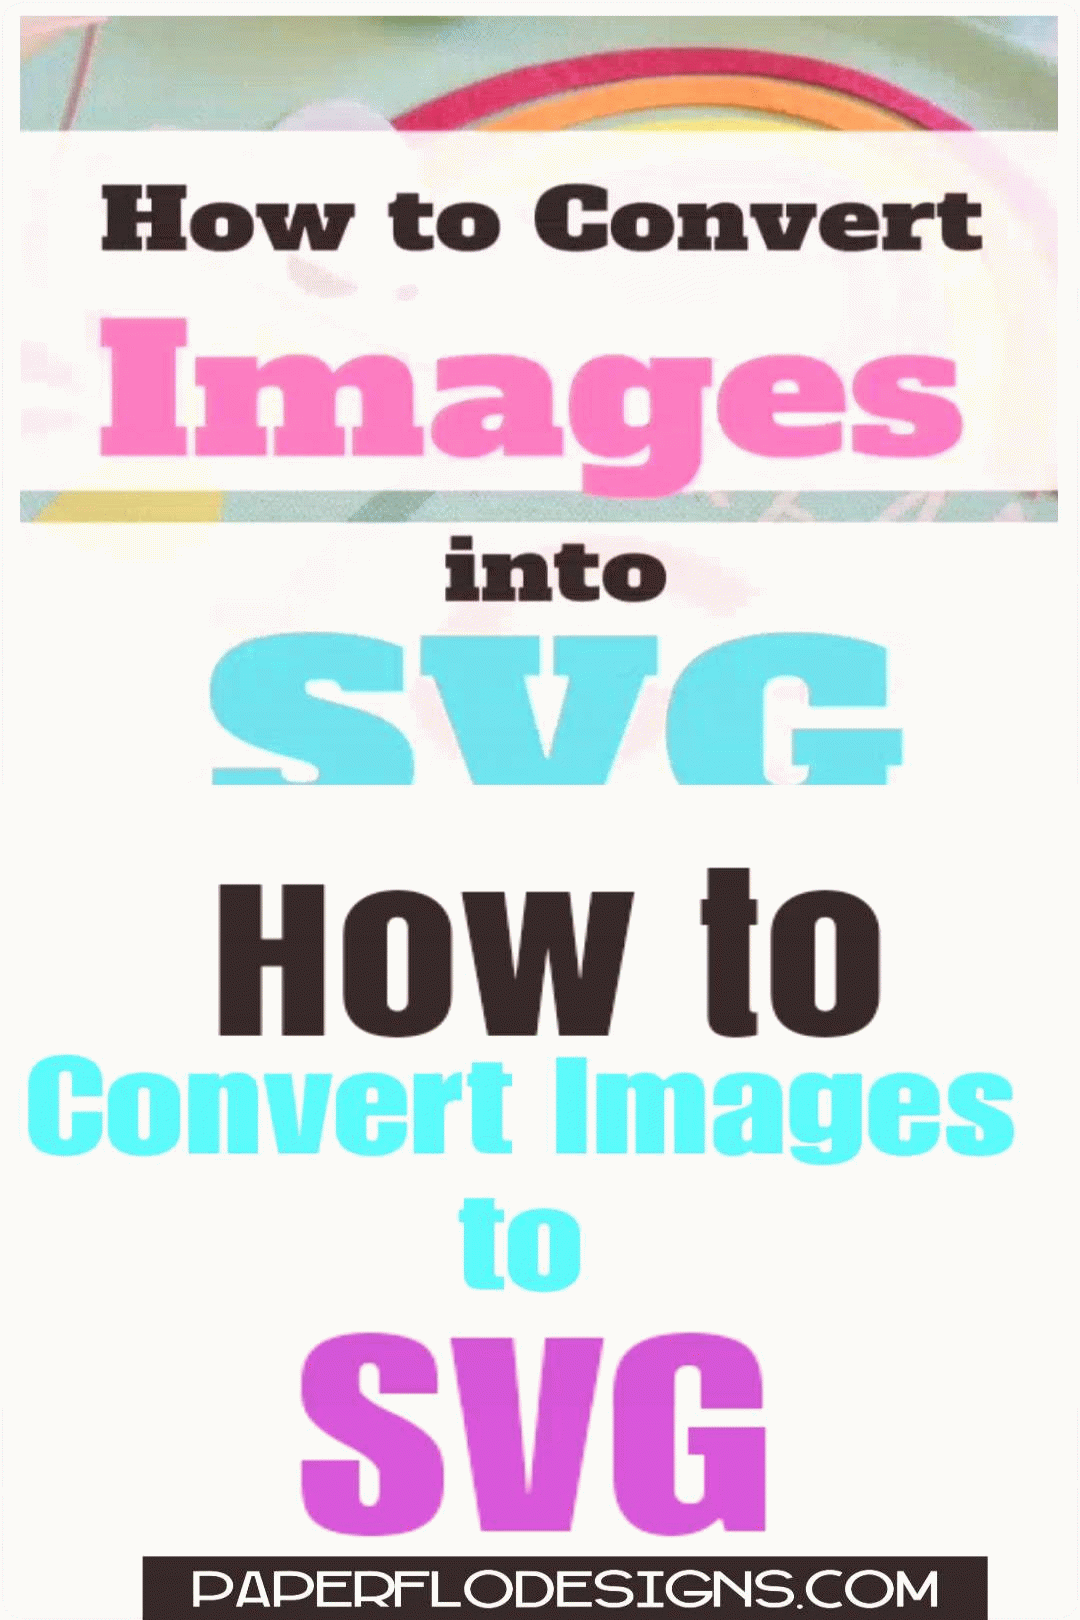 Você pode converter imagens para SVG?